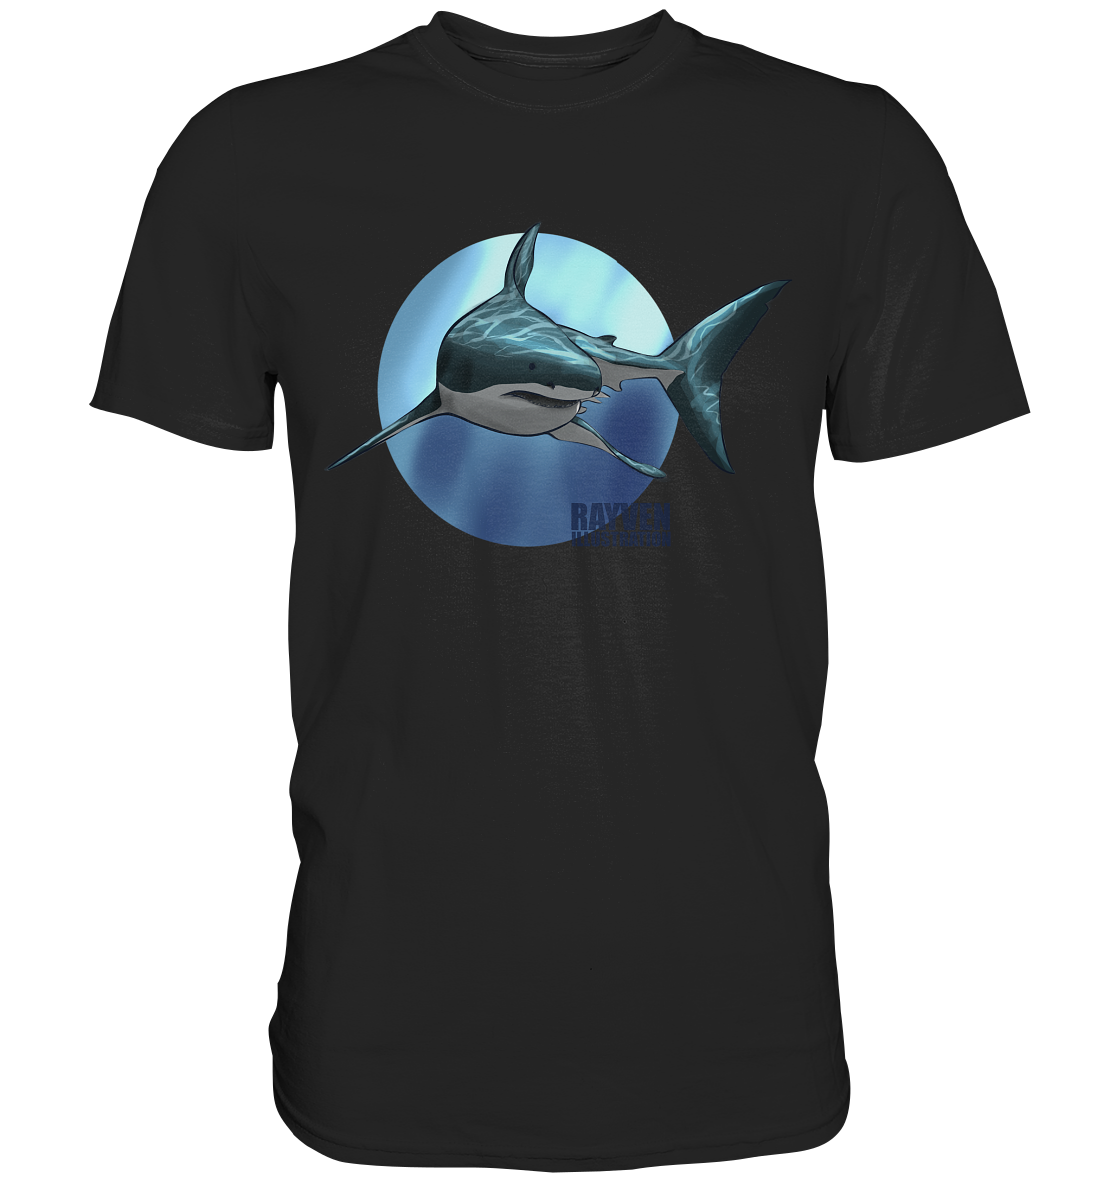 Rayven Illustration | Shark - Premium Shirt